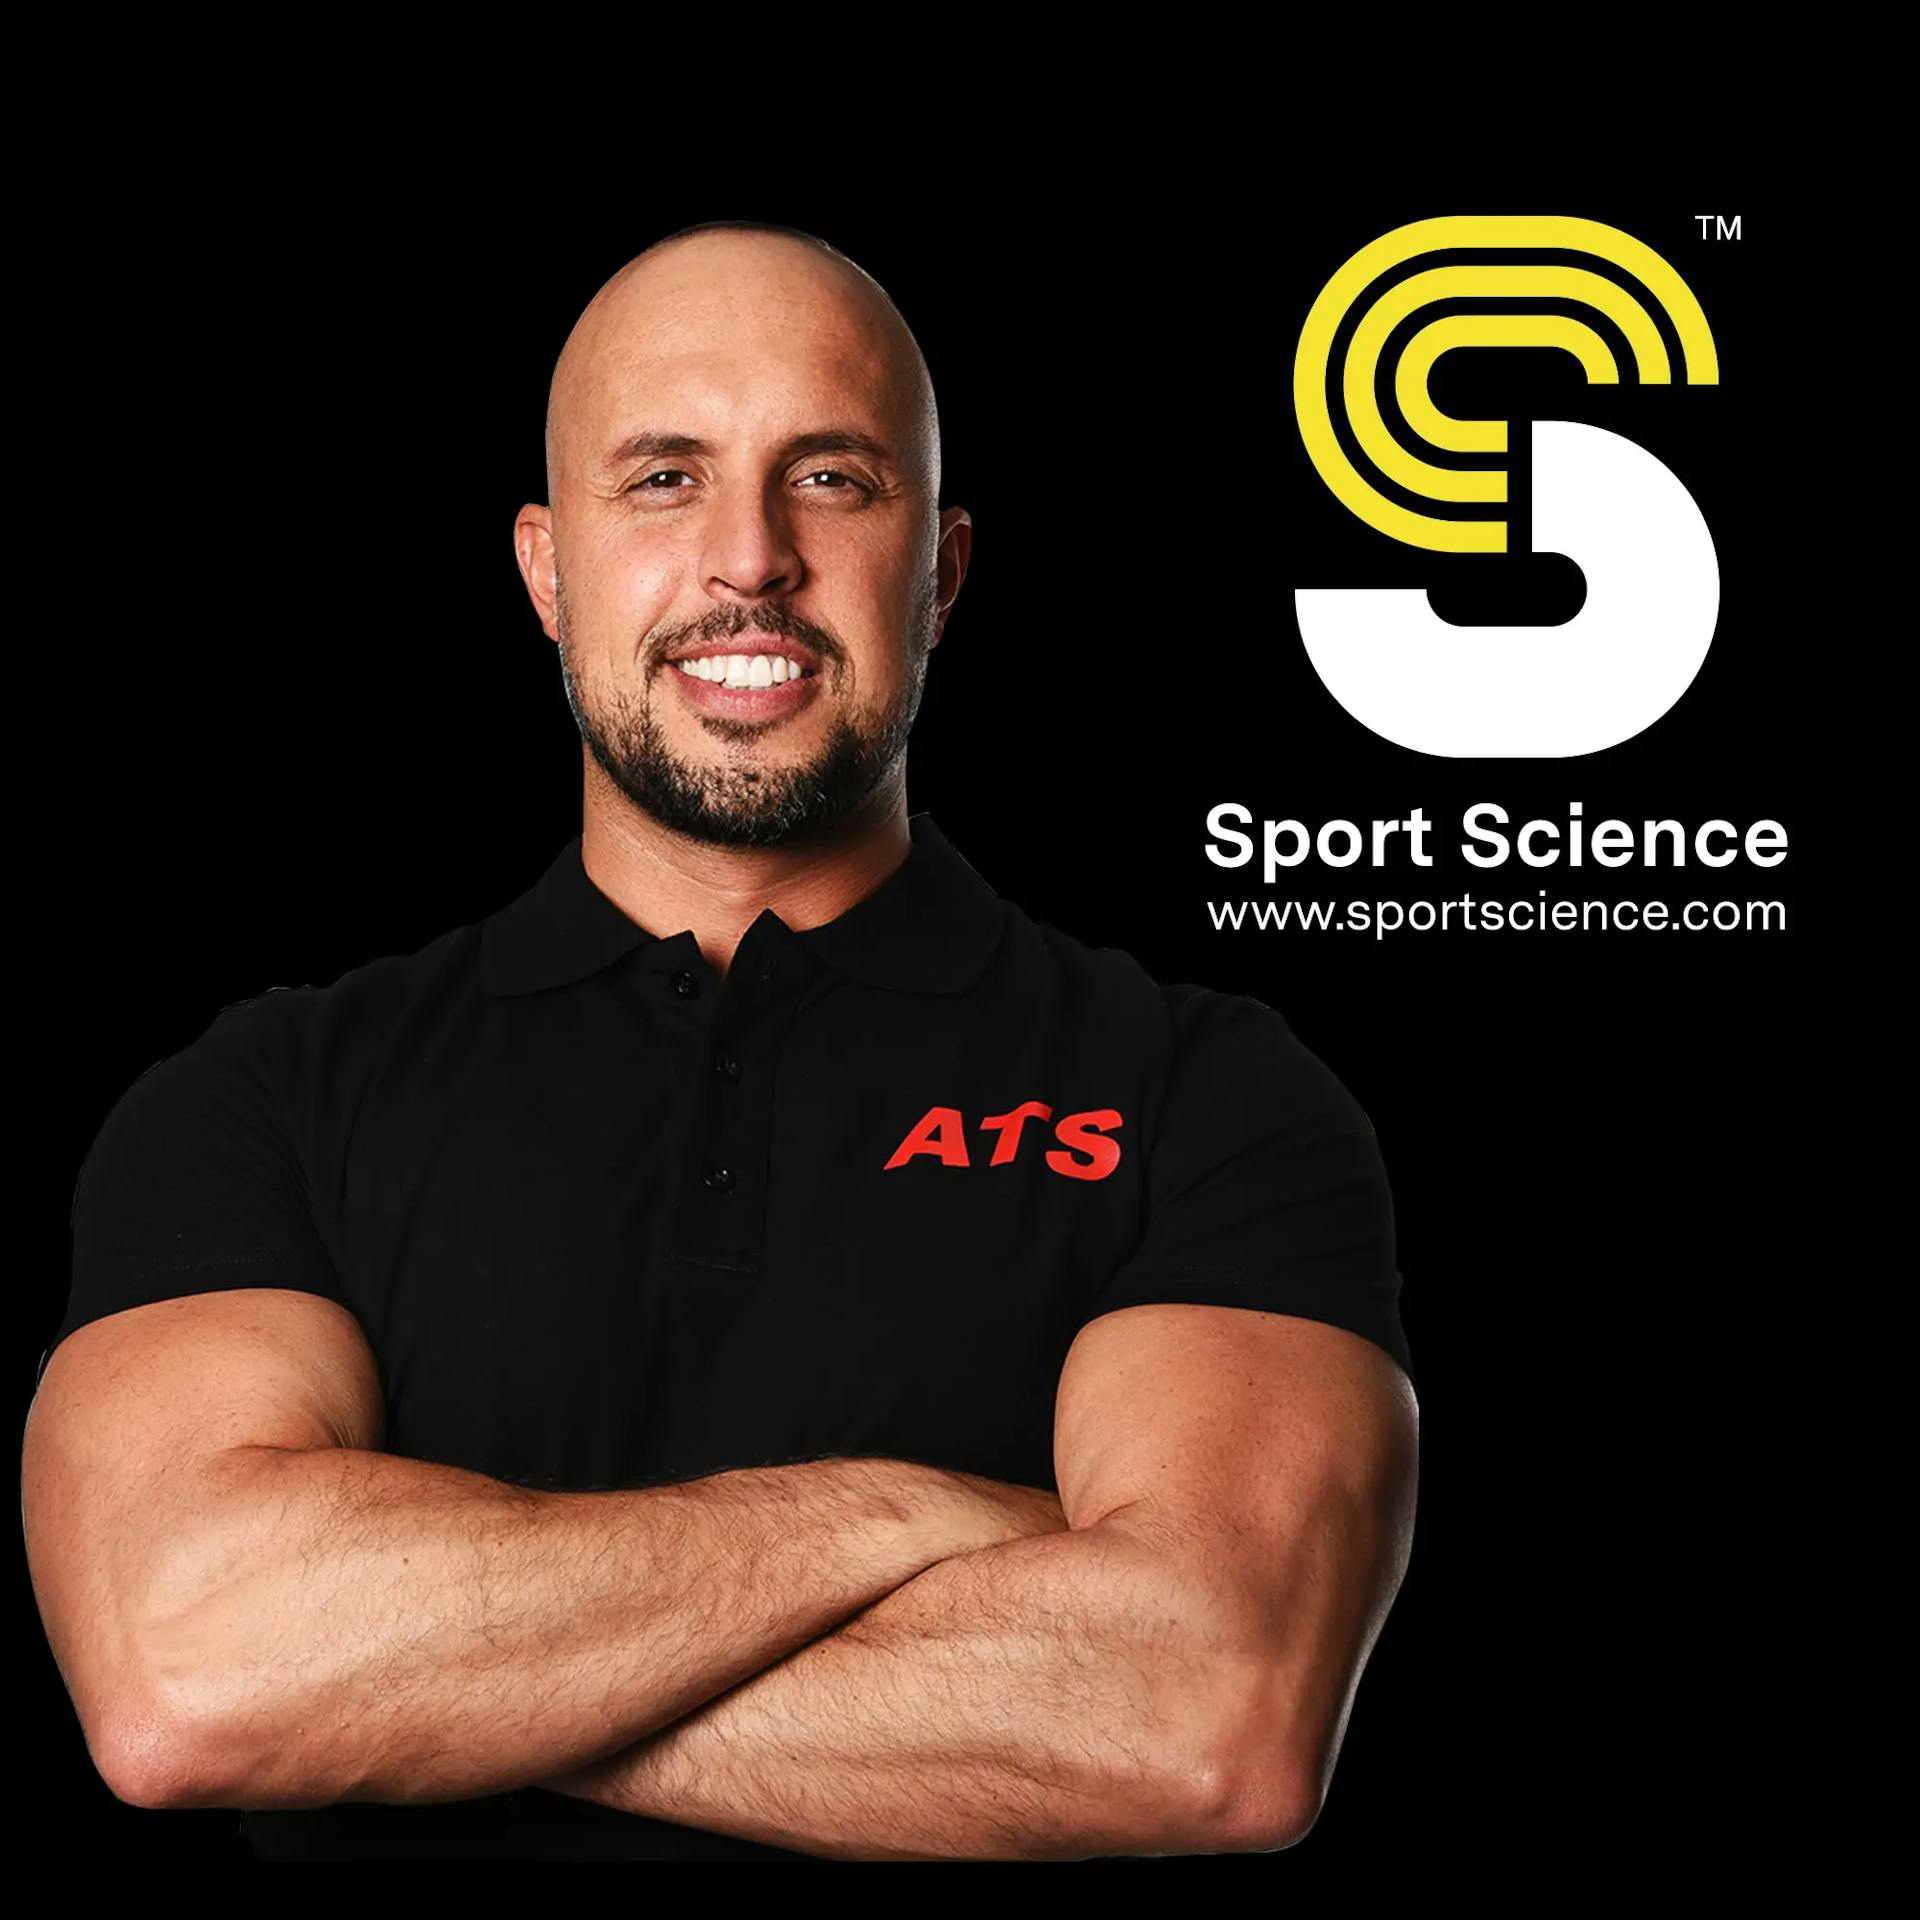 Sport Science in collaborazione con ATS